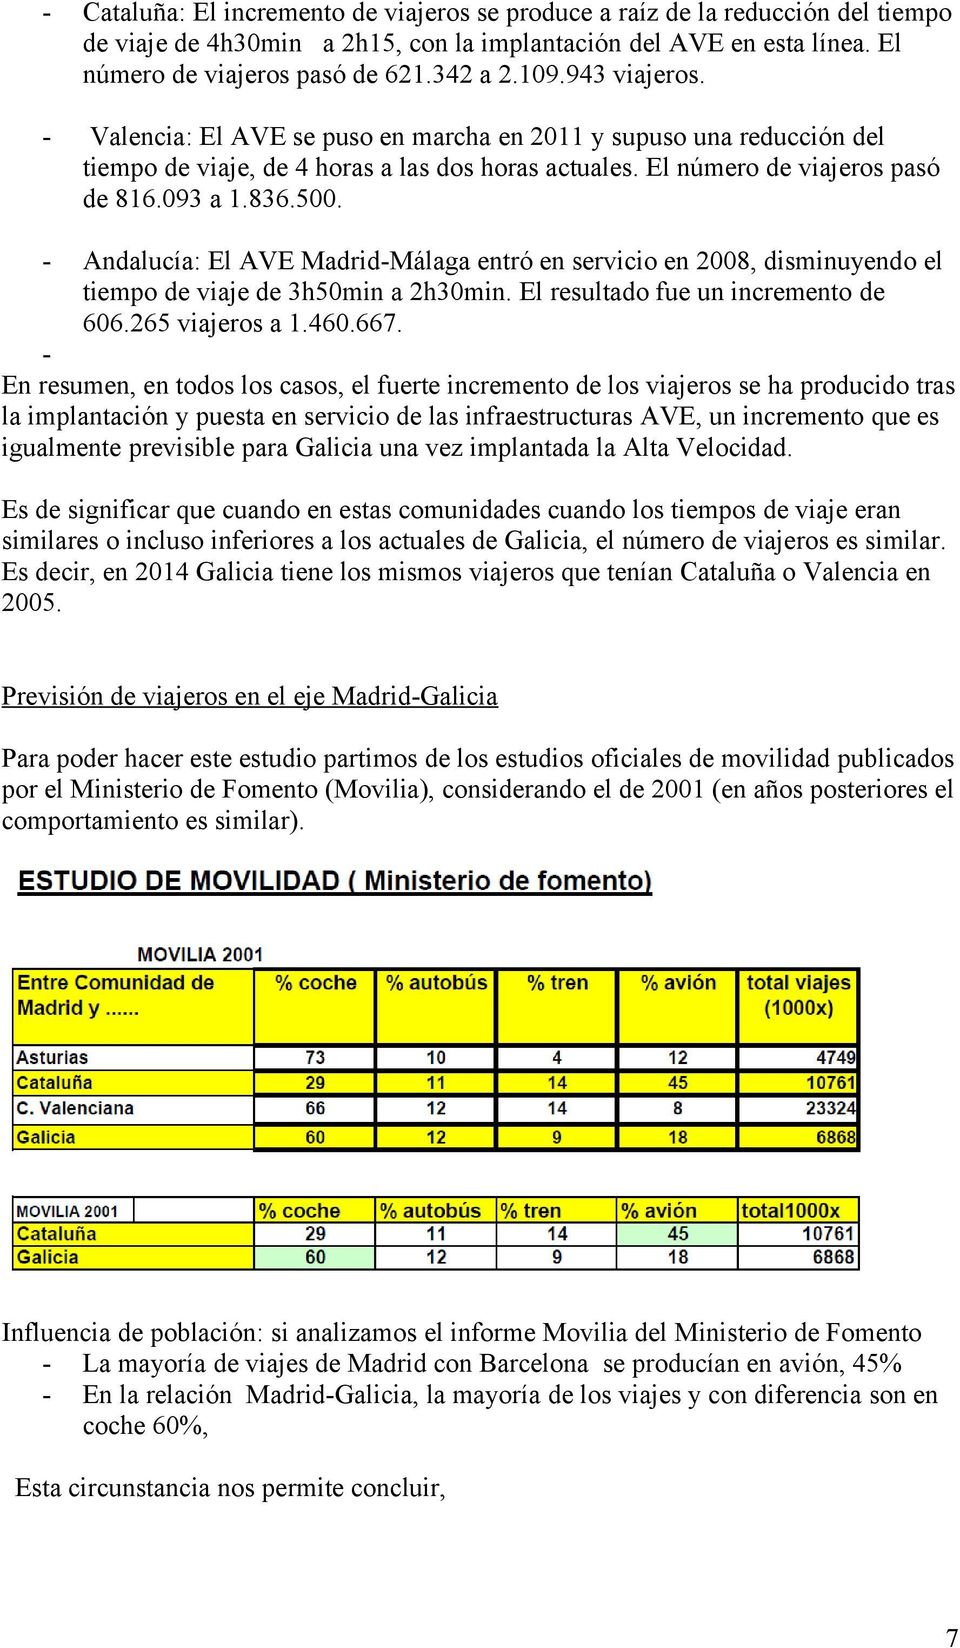 - Andalucía: El AVE Madrid-Málaga entró en servicio en 2008, disminuyendo el tiempo de viaje de 3h50min a 2h30min. El resultado fue un incremento de 606.265 viajeros a 1.460.667.